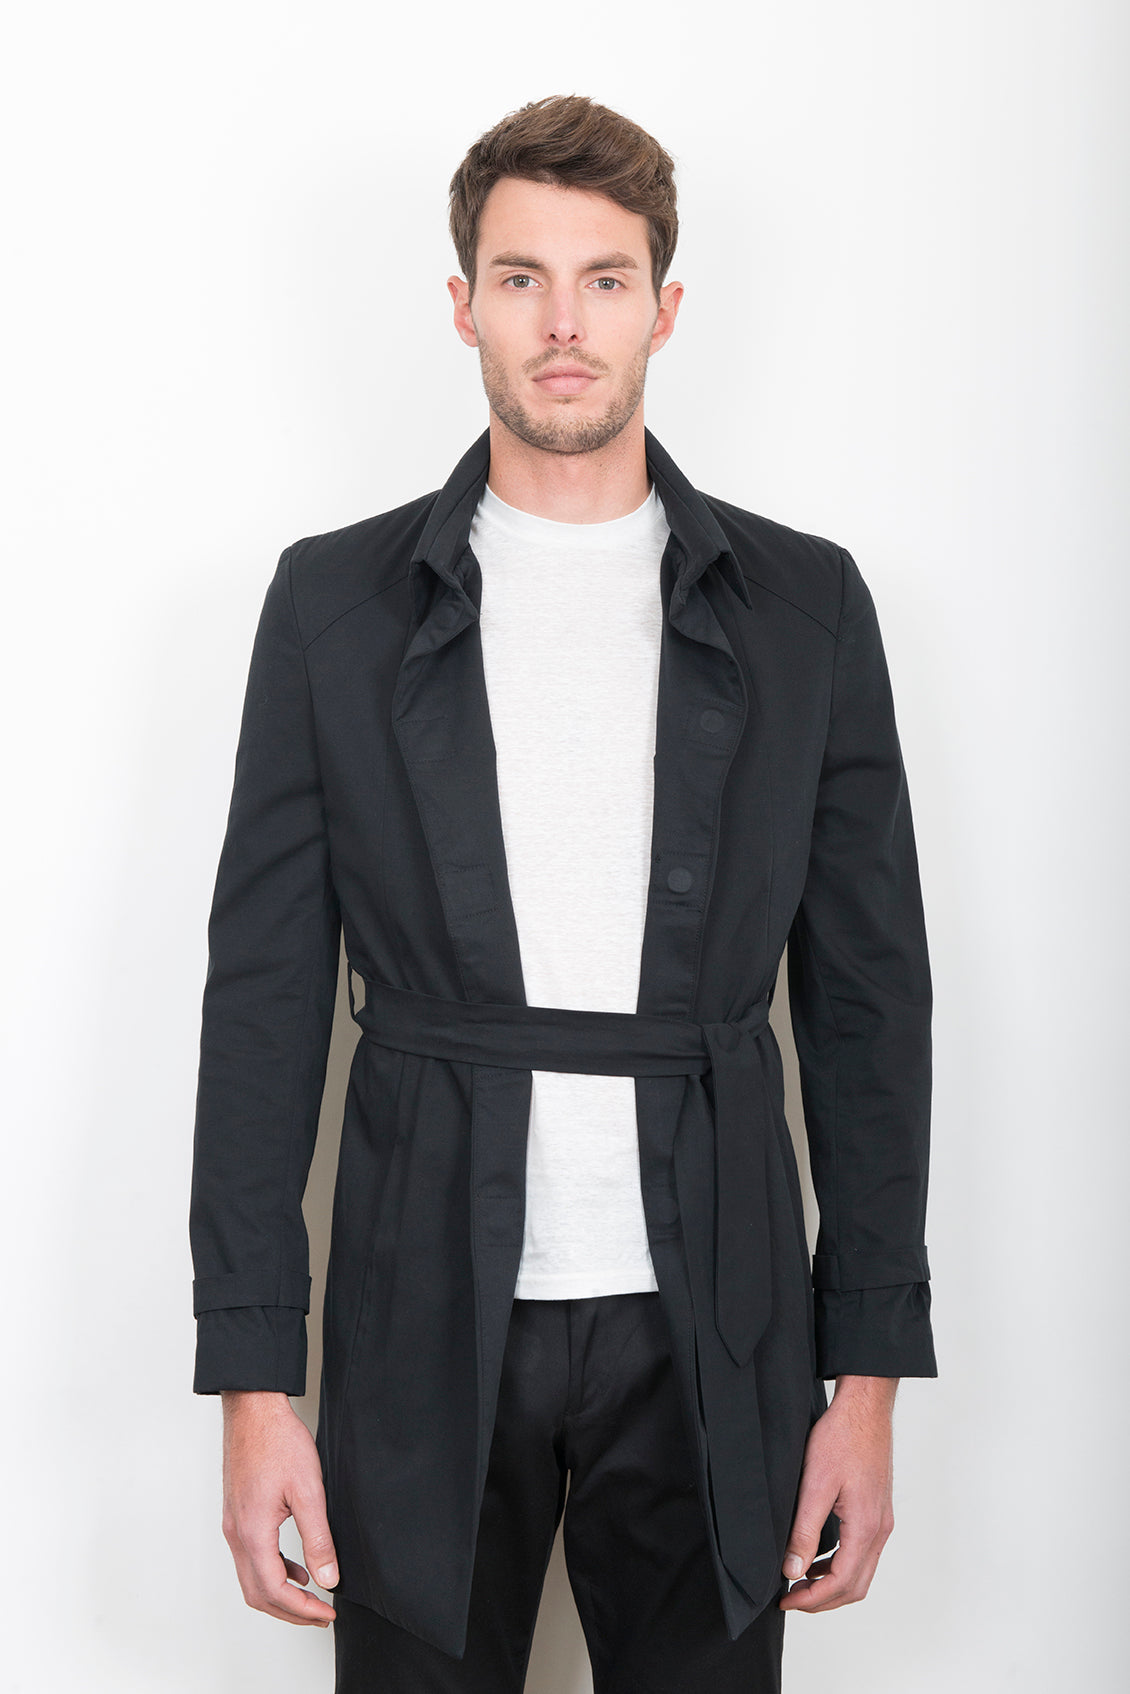 Sébastien Blondin trench coat veste jacket chic été summer coton cotton noir black créateur designer nouveau new basique basic mode fashion homme man men men's world